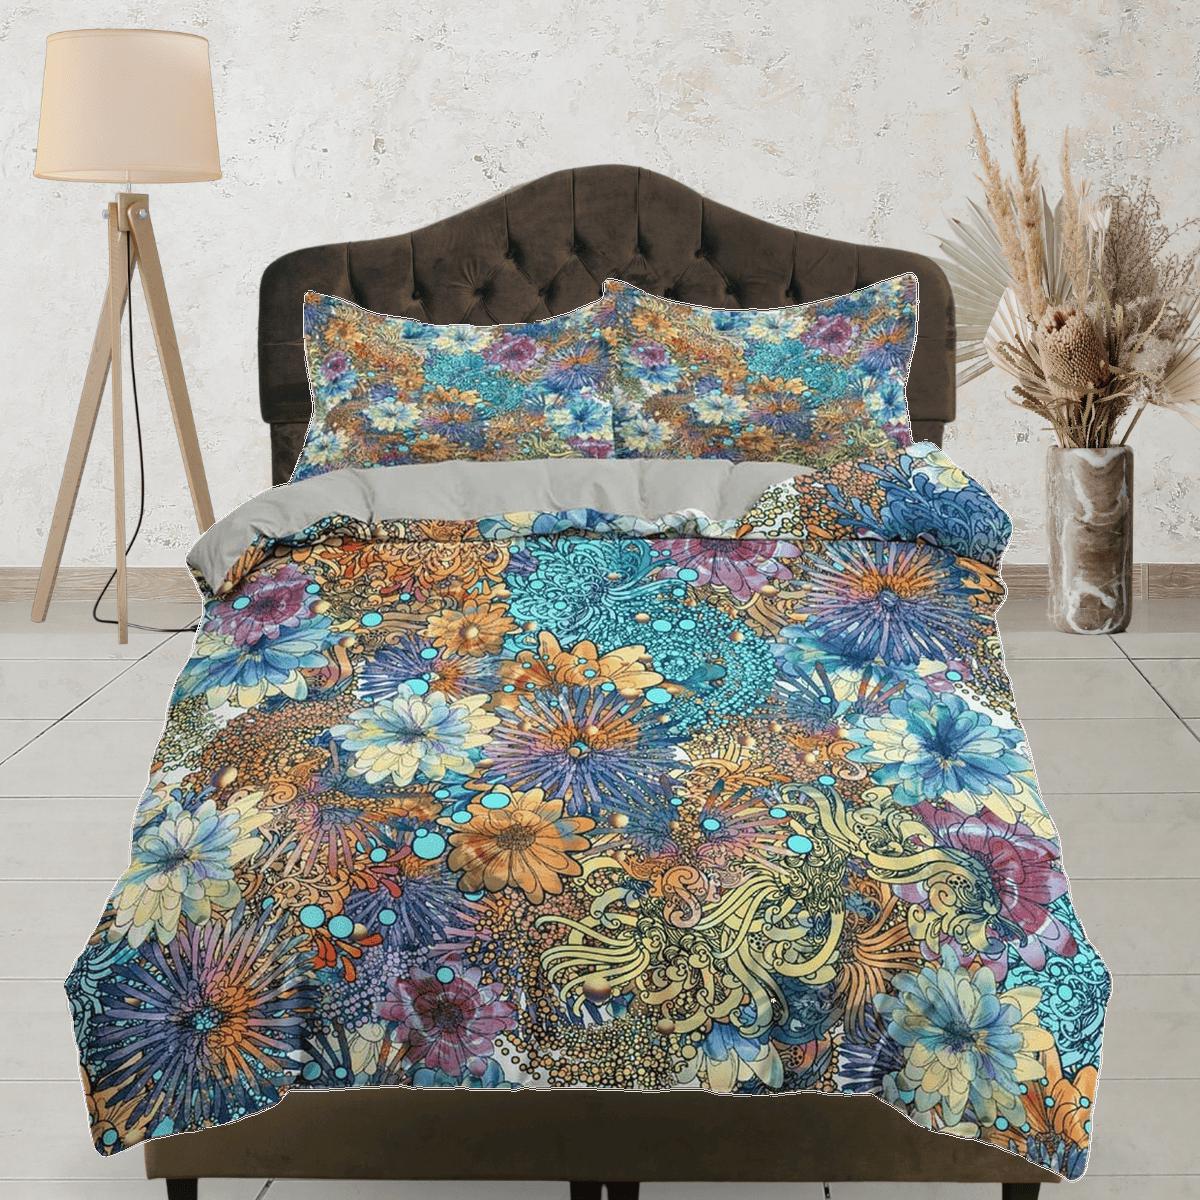 daintyduvet Chrysanthemum colorful floral duvet cover queen, king, boho duvet, designer bedding, aesthetic bedding, maximalist full size bedding